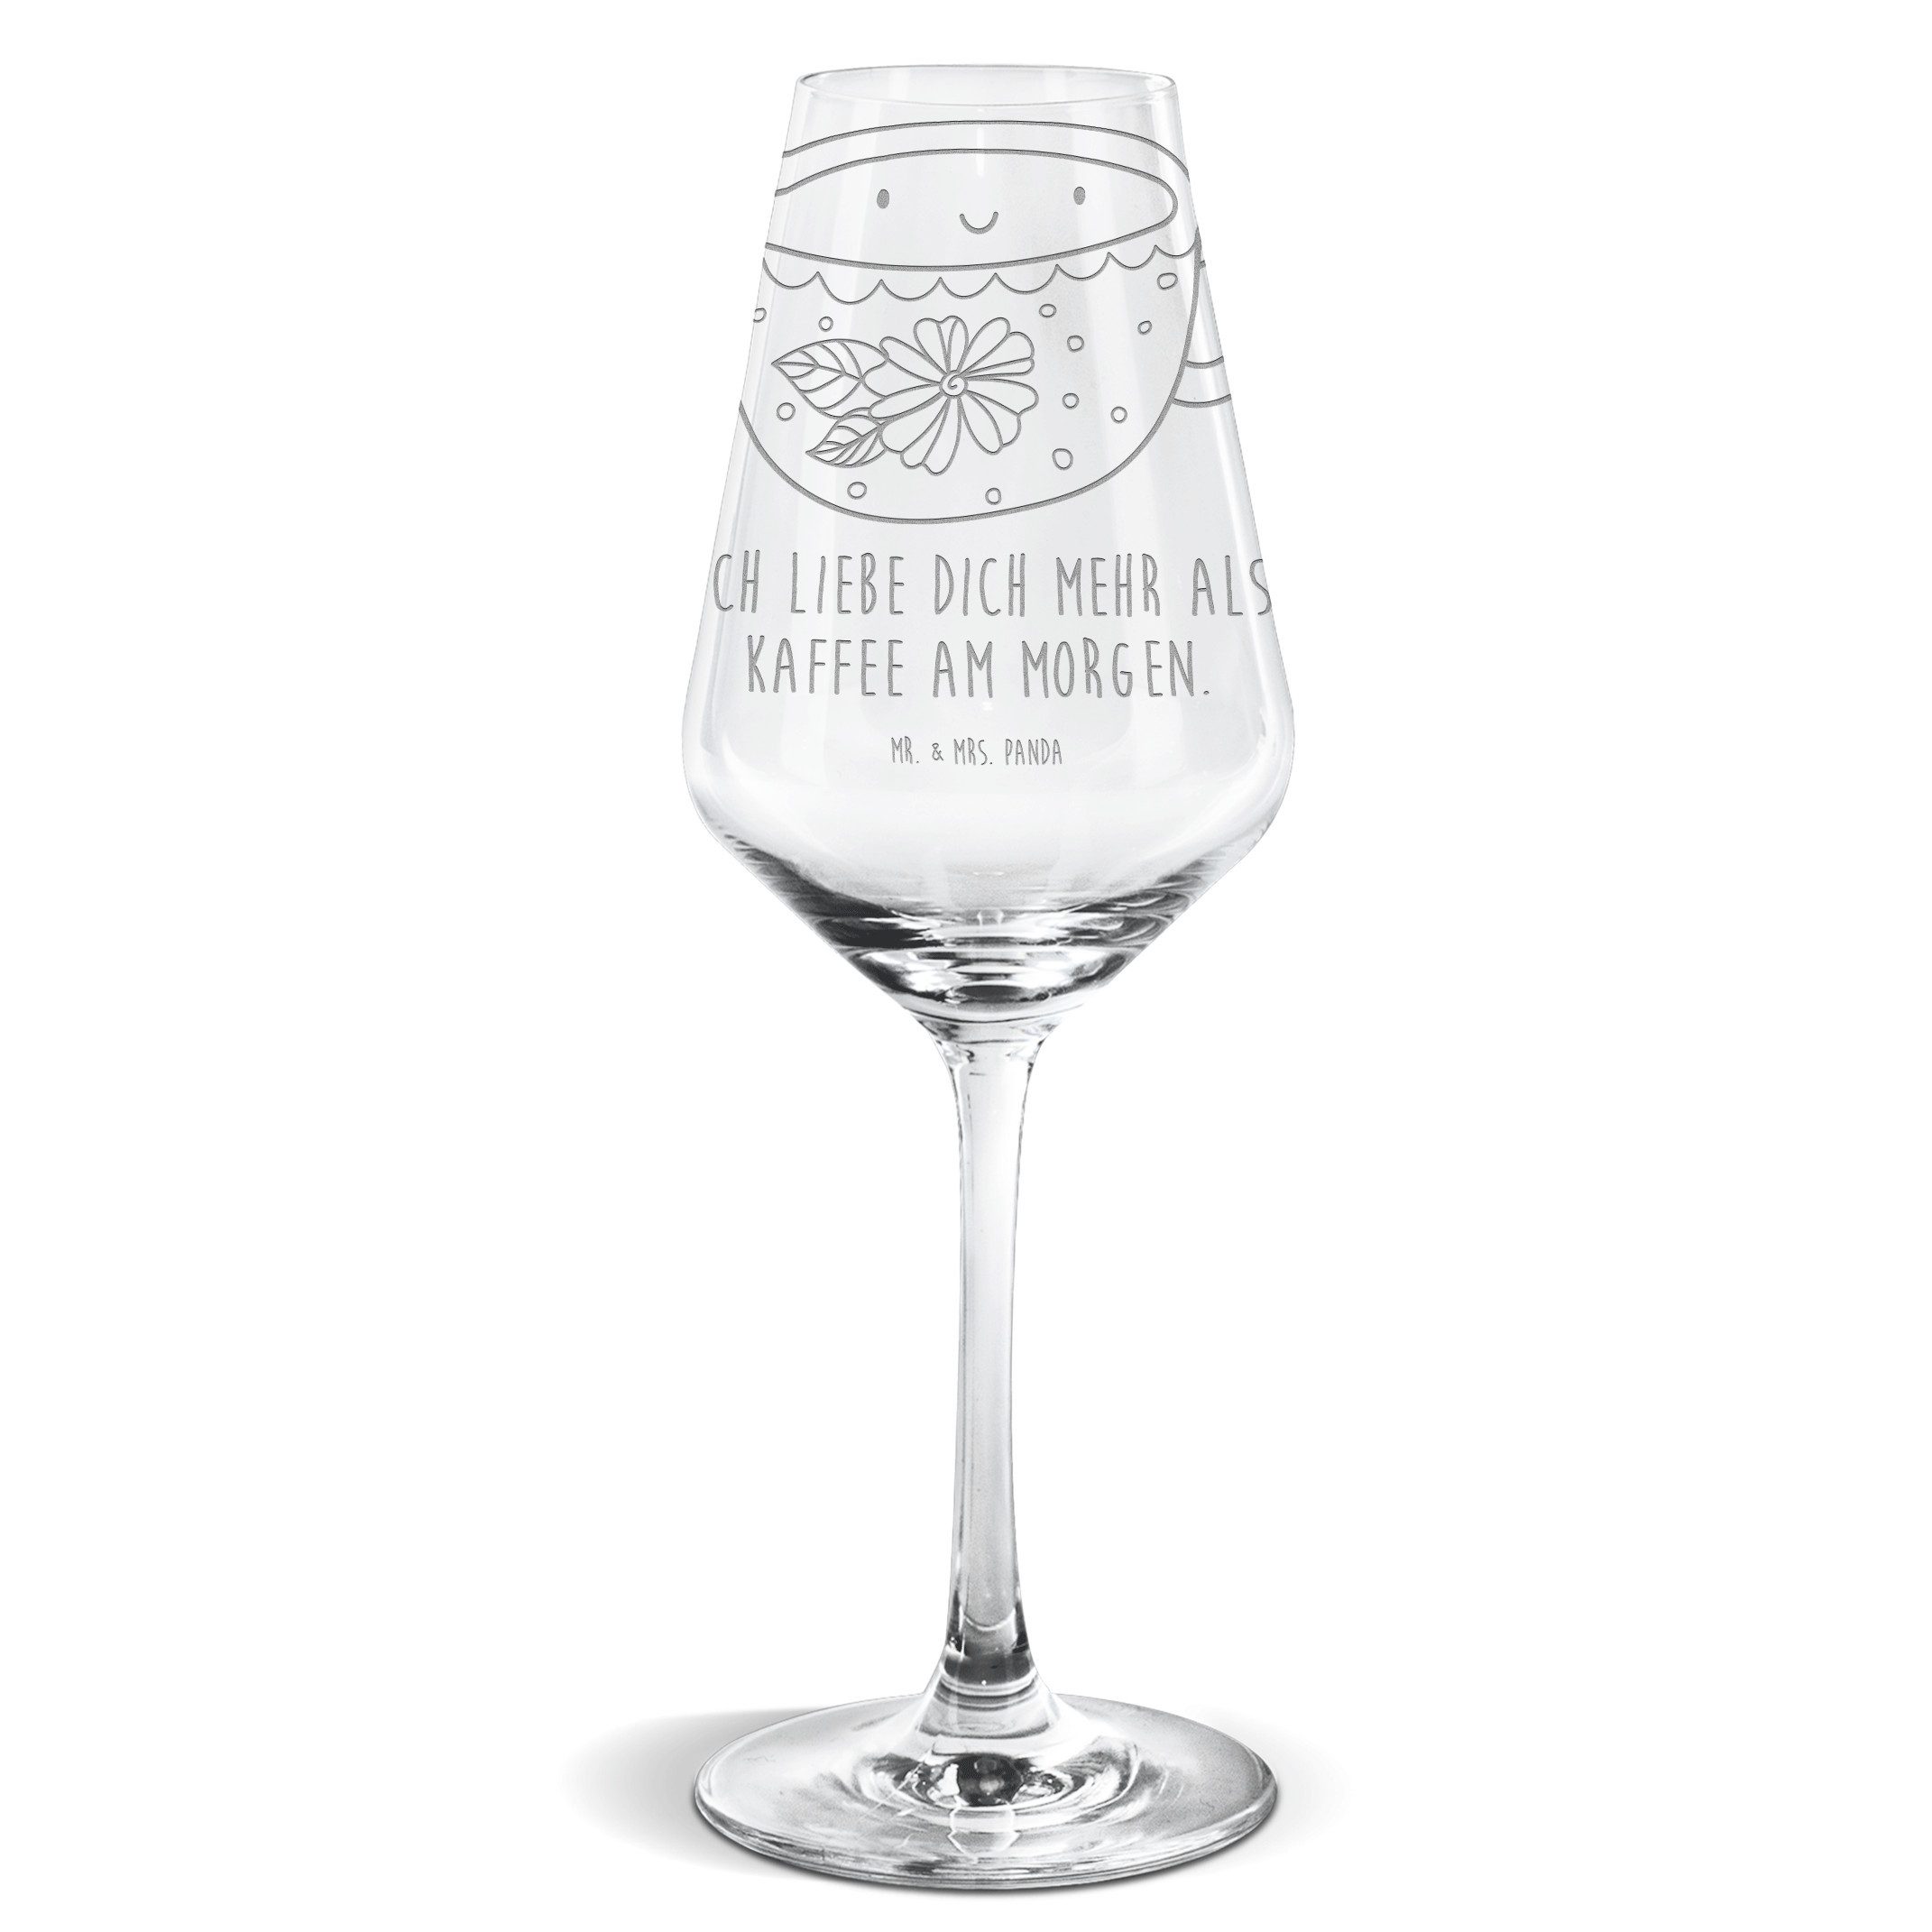 Mr. & Mrs. Panda Weißweinglas Kaffee Tasse - Transparent - Geschenk, Spülmaschinenfeste Weingläser, Premium Glas, Alltagstauglich & robust